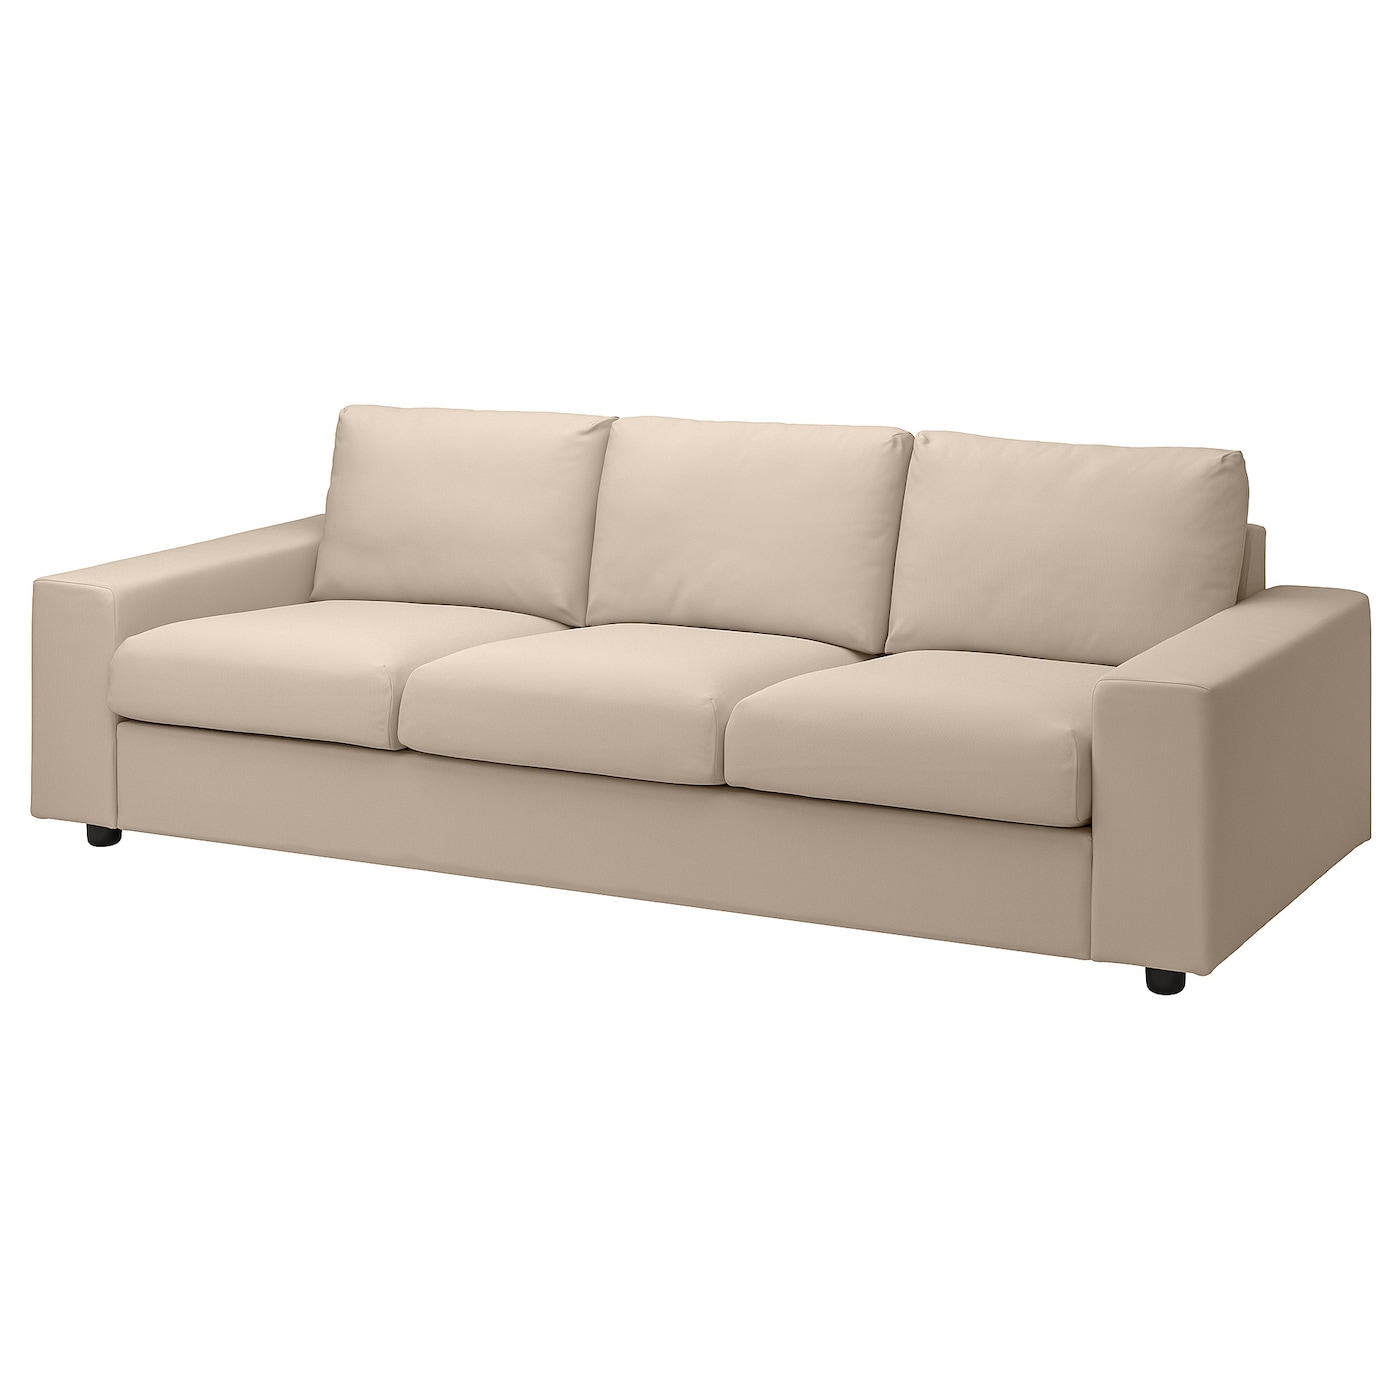 ВИМЛЕ 3-местный диван, с широкими подлокотниками/Халларп бежевый VIMLE IKEA